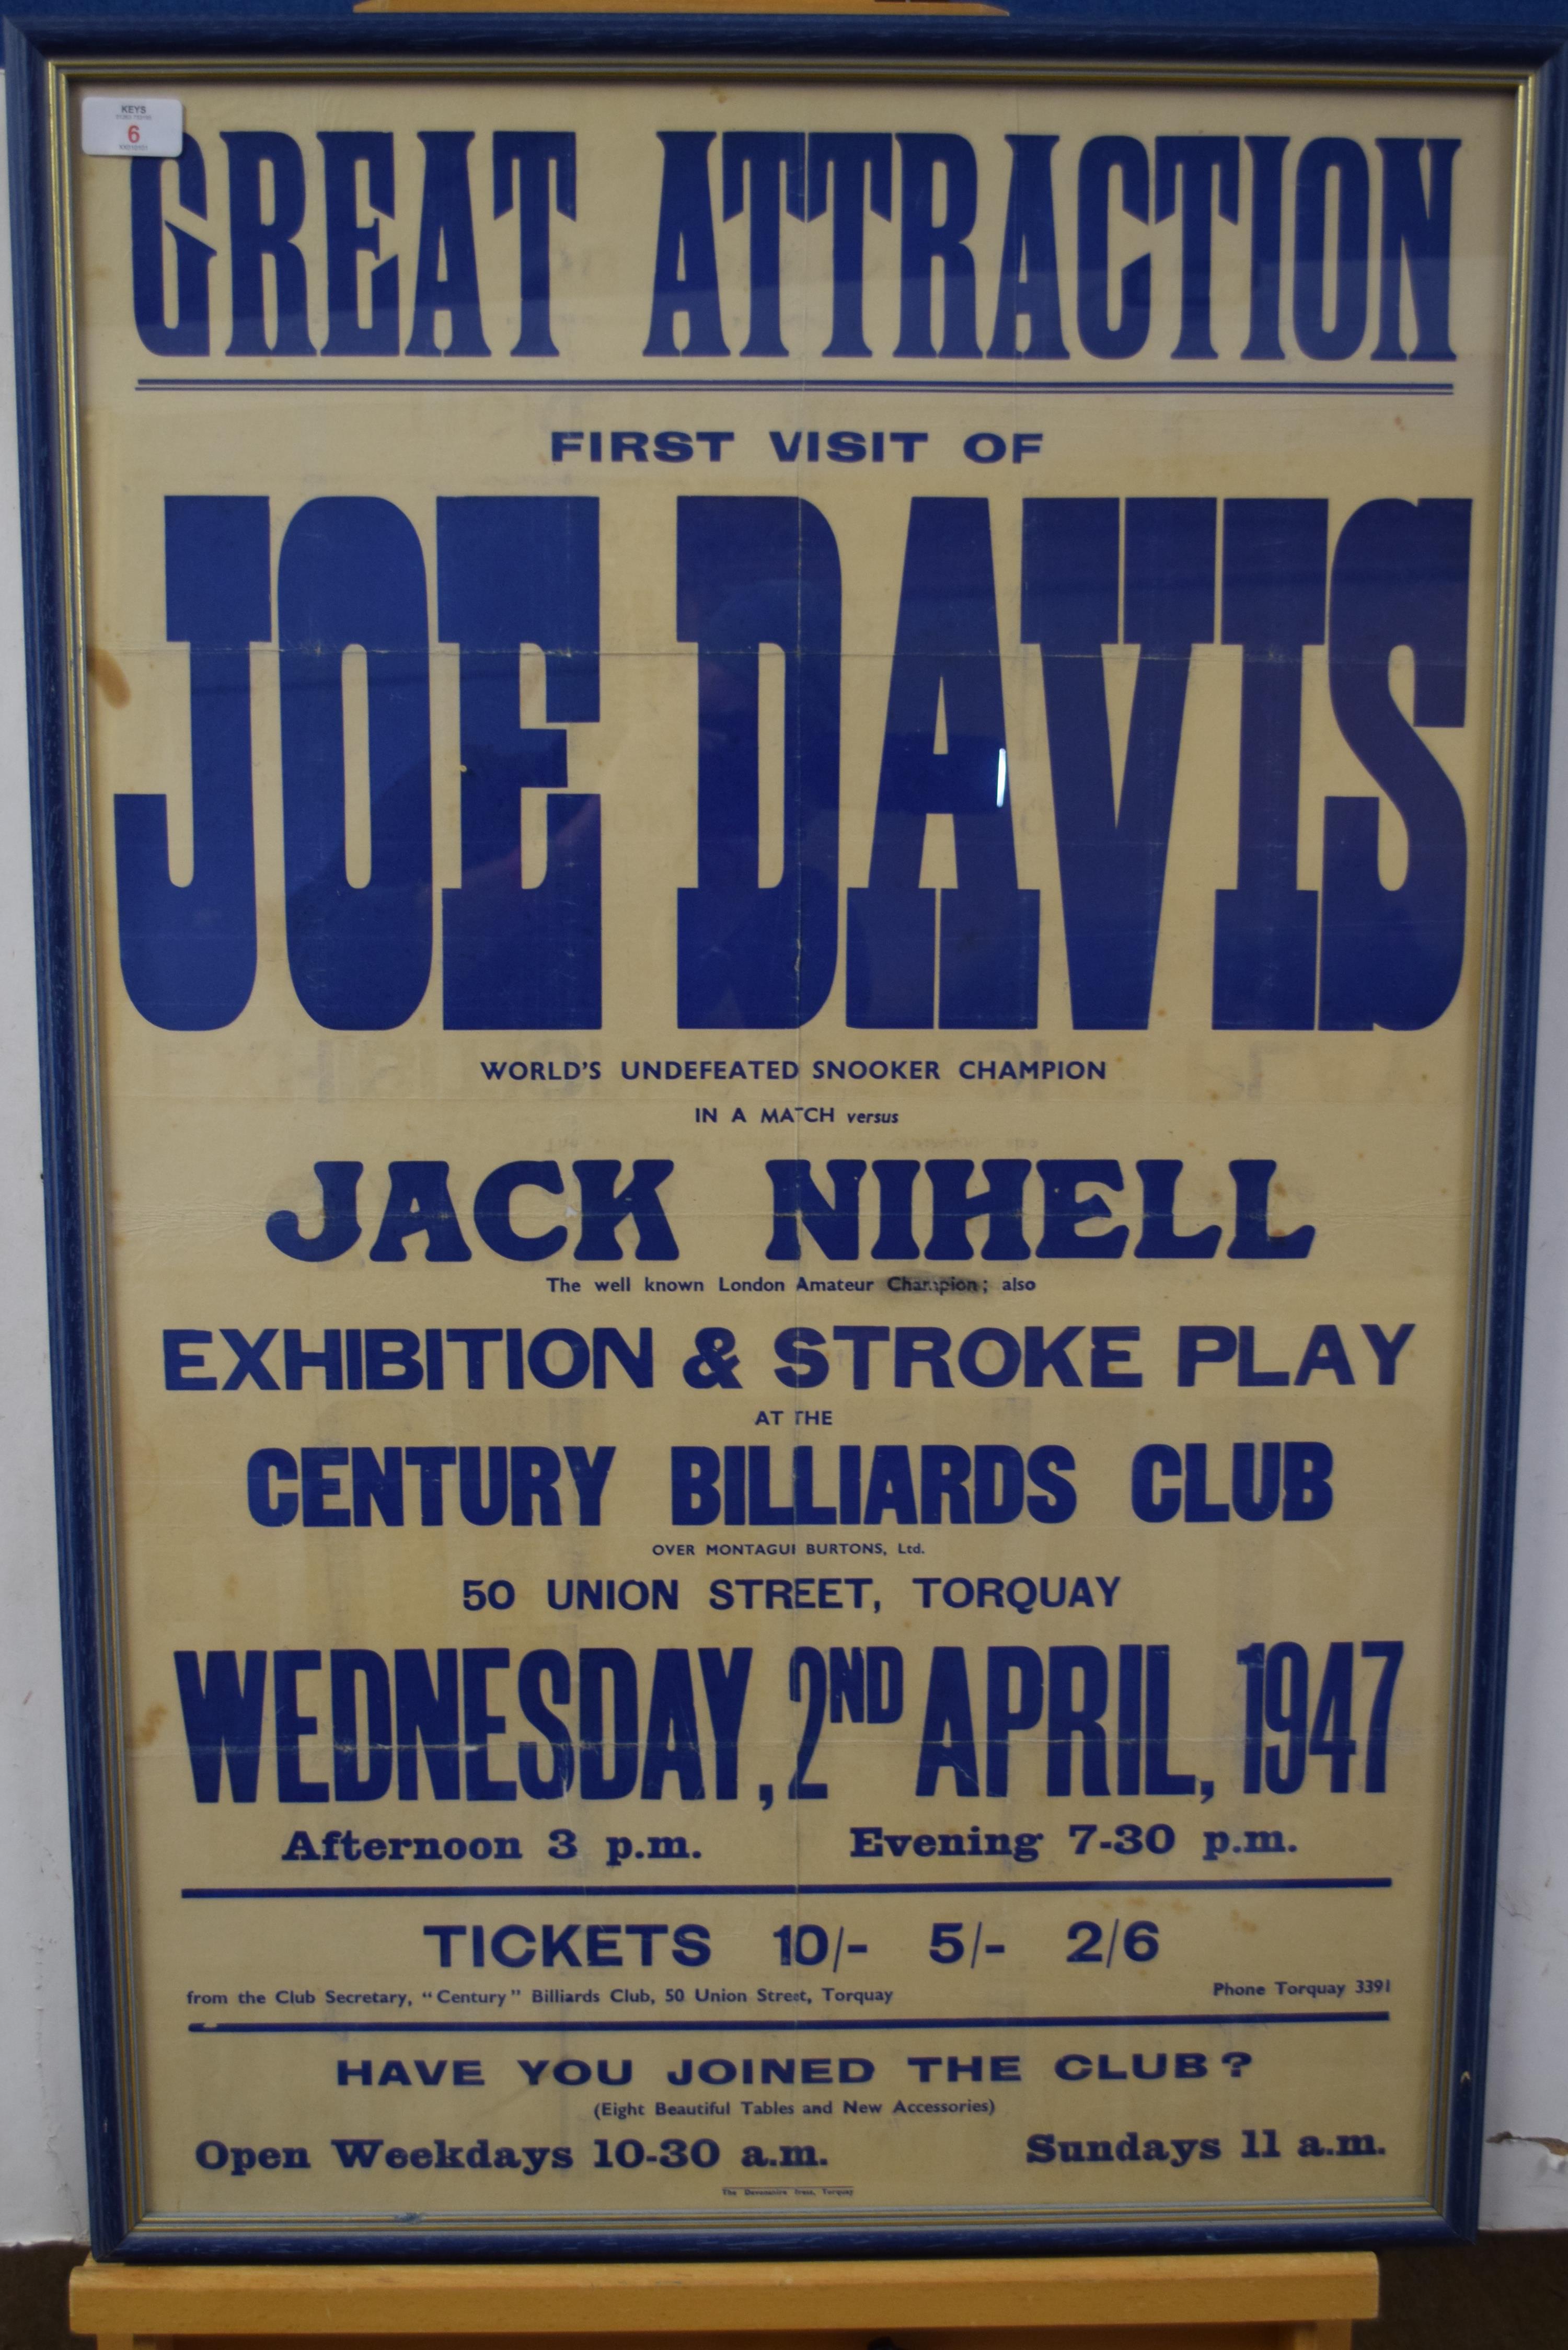 Snooker advertising poster - First visit of Joe Davis v Jack Nihell at Century Billiards Club, 50